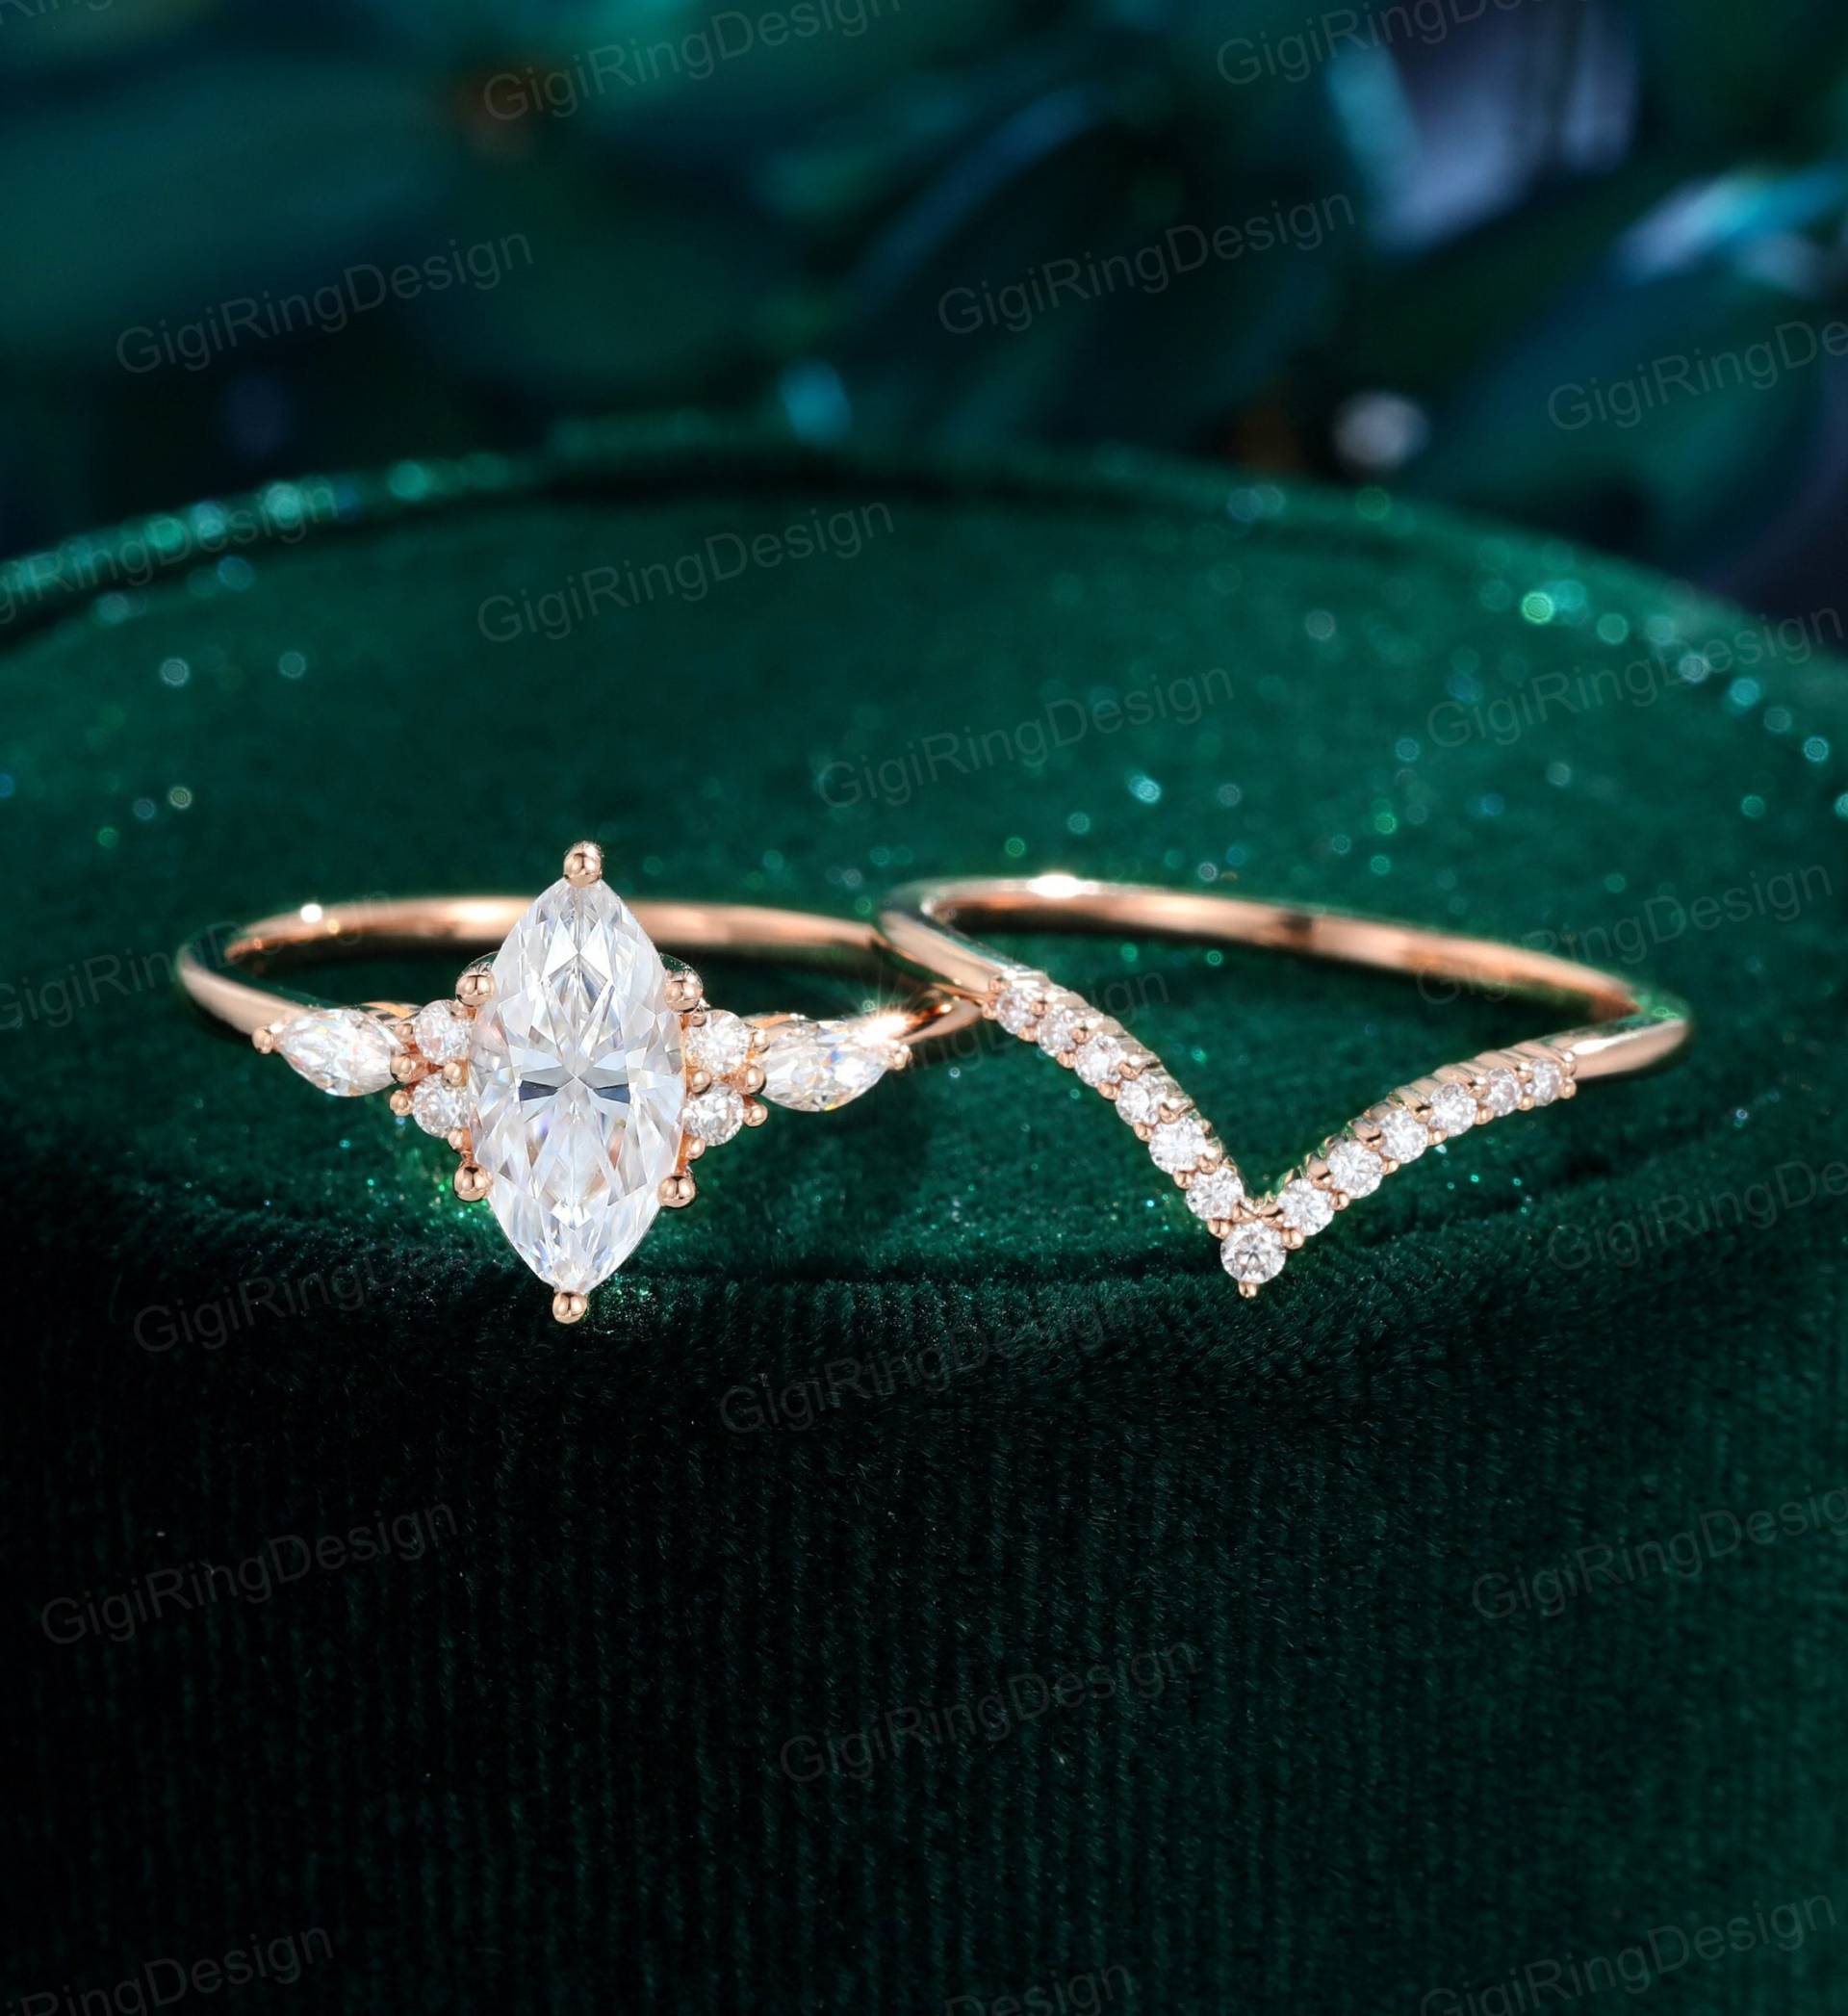 Einzigartiger Marquise Moissanit Verlobungsring Set Vintage Roségold Cluster Diamant Ring Braut Versprechen Jahrestag Geschenk von GigiRingDesign